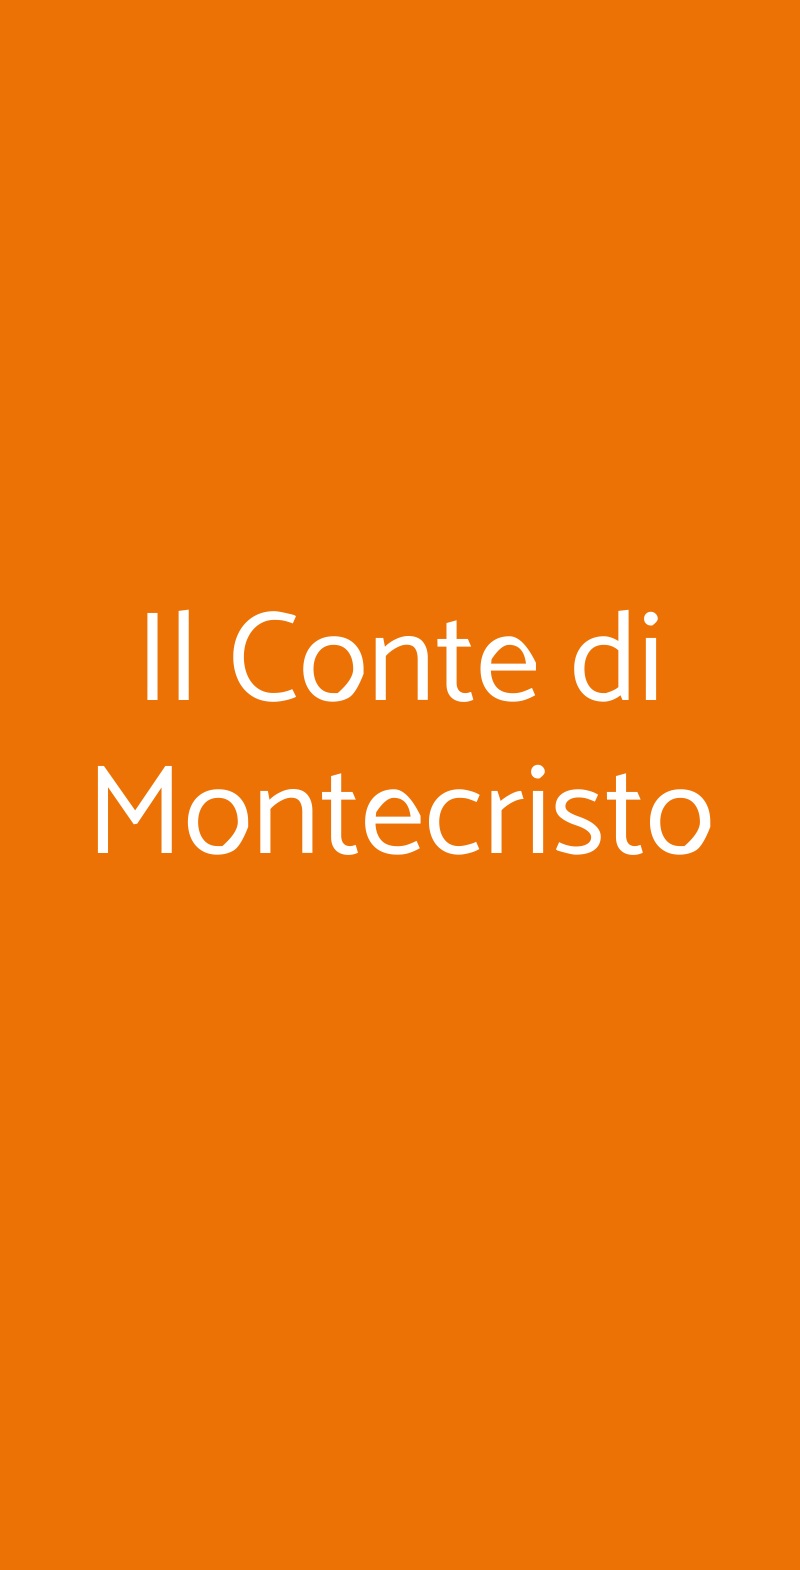 Il Conte di Montecristo Roma menù 1 pagina